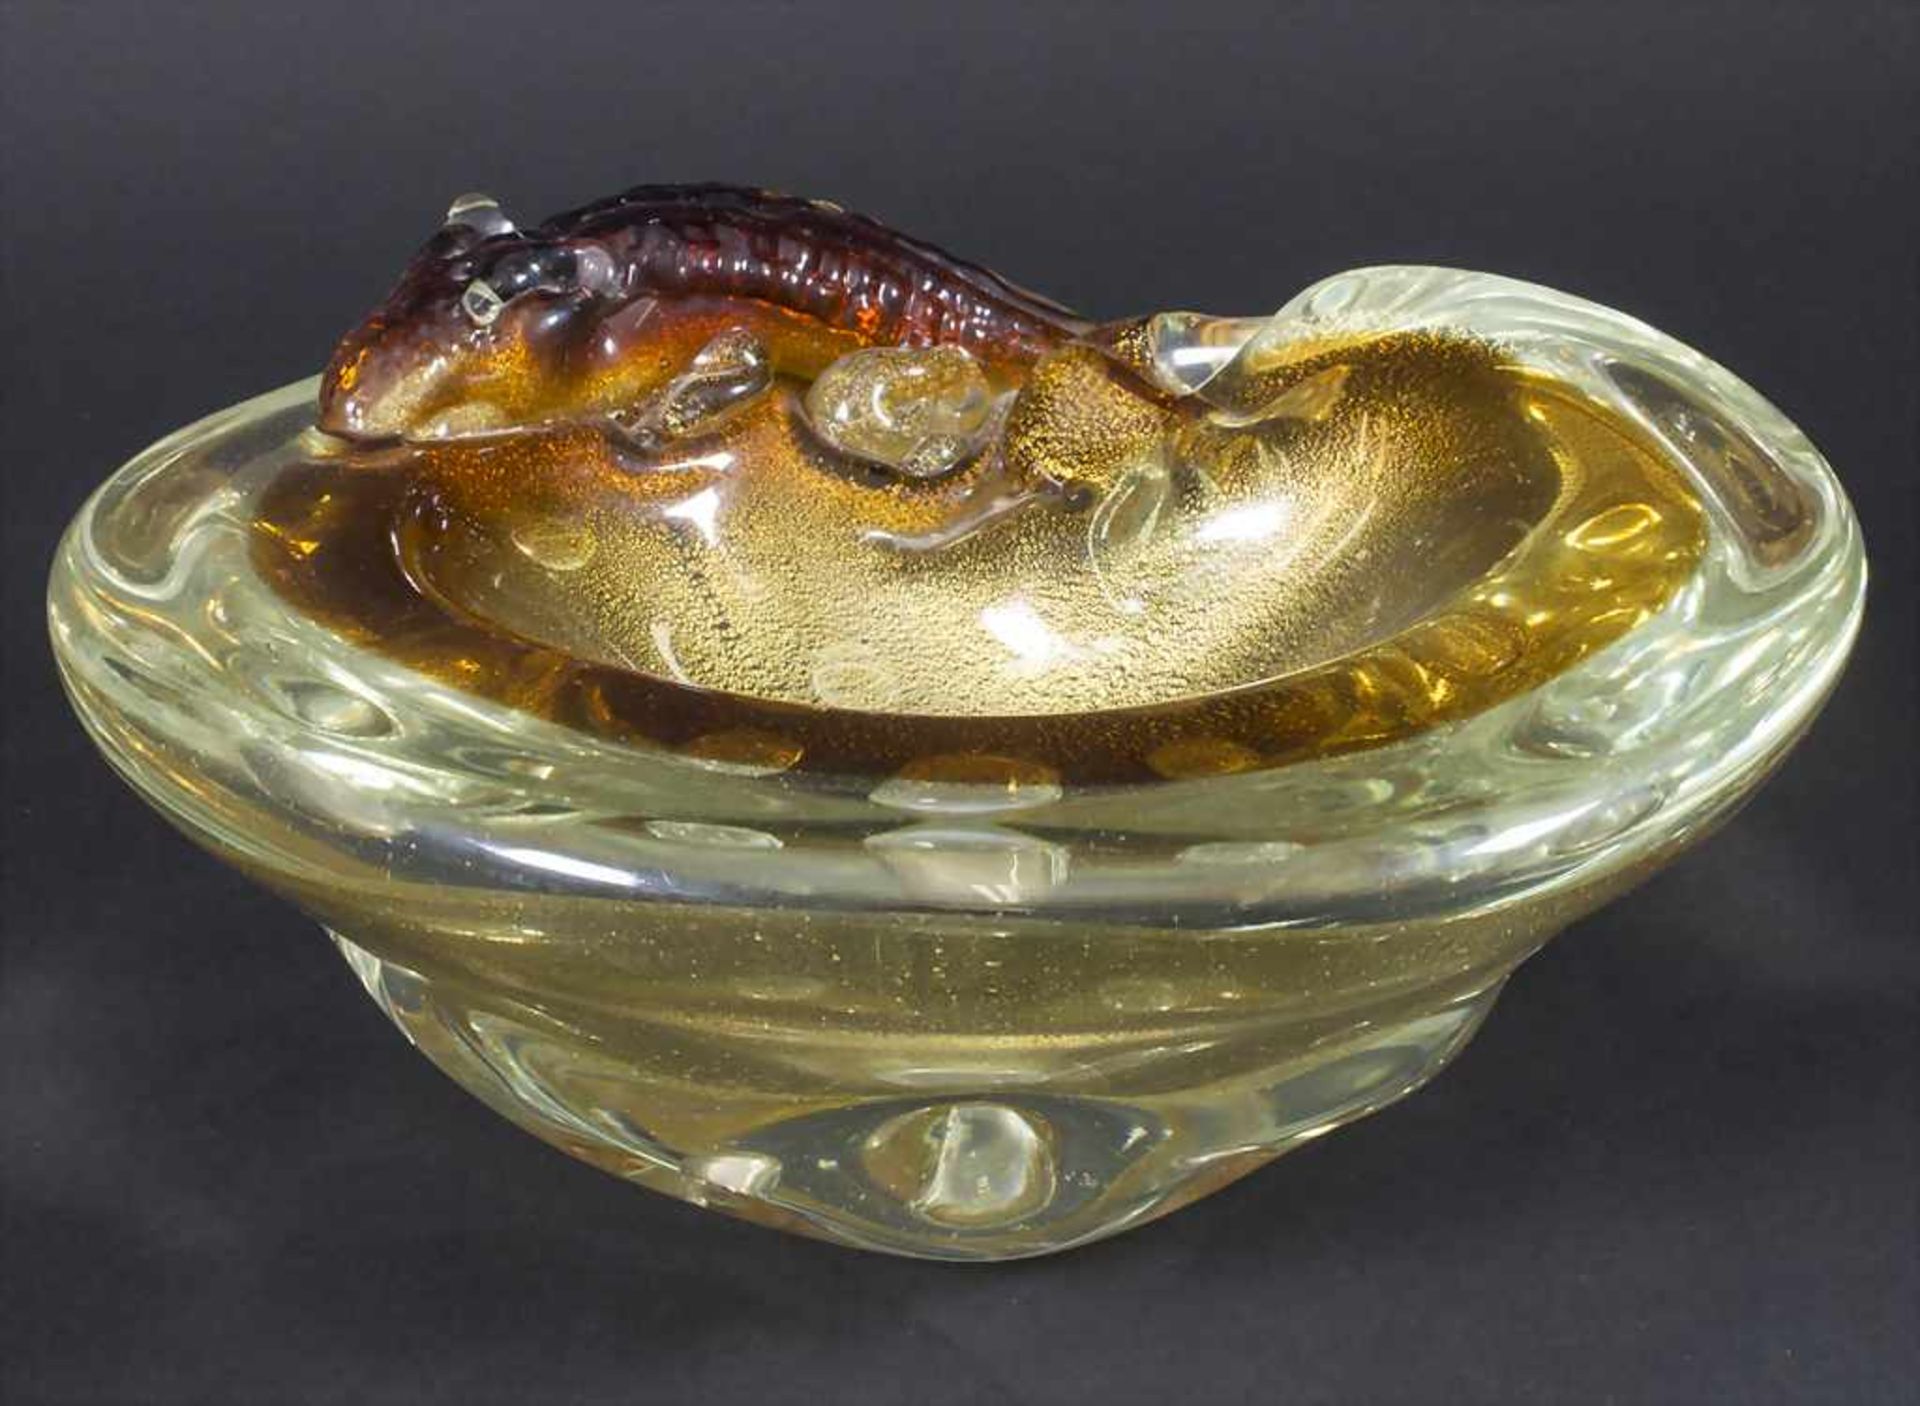 Glaszierschale 'Krokodil' / A decorative glass bowl 'crocodile', Brovier & Toso, Murano, um